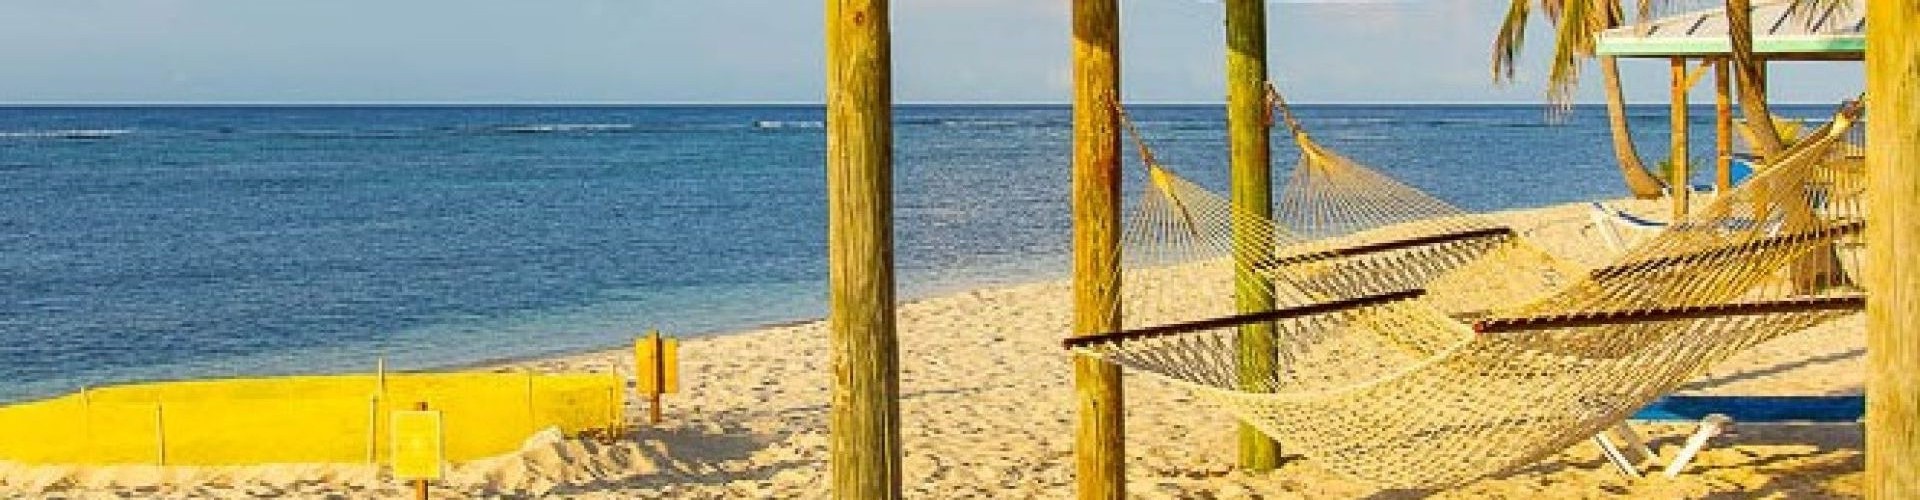 1 - Cayman Brac Beach